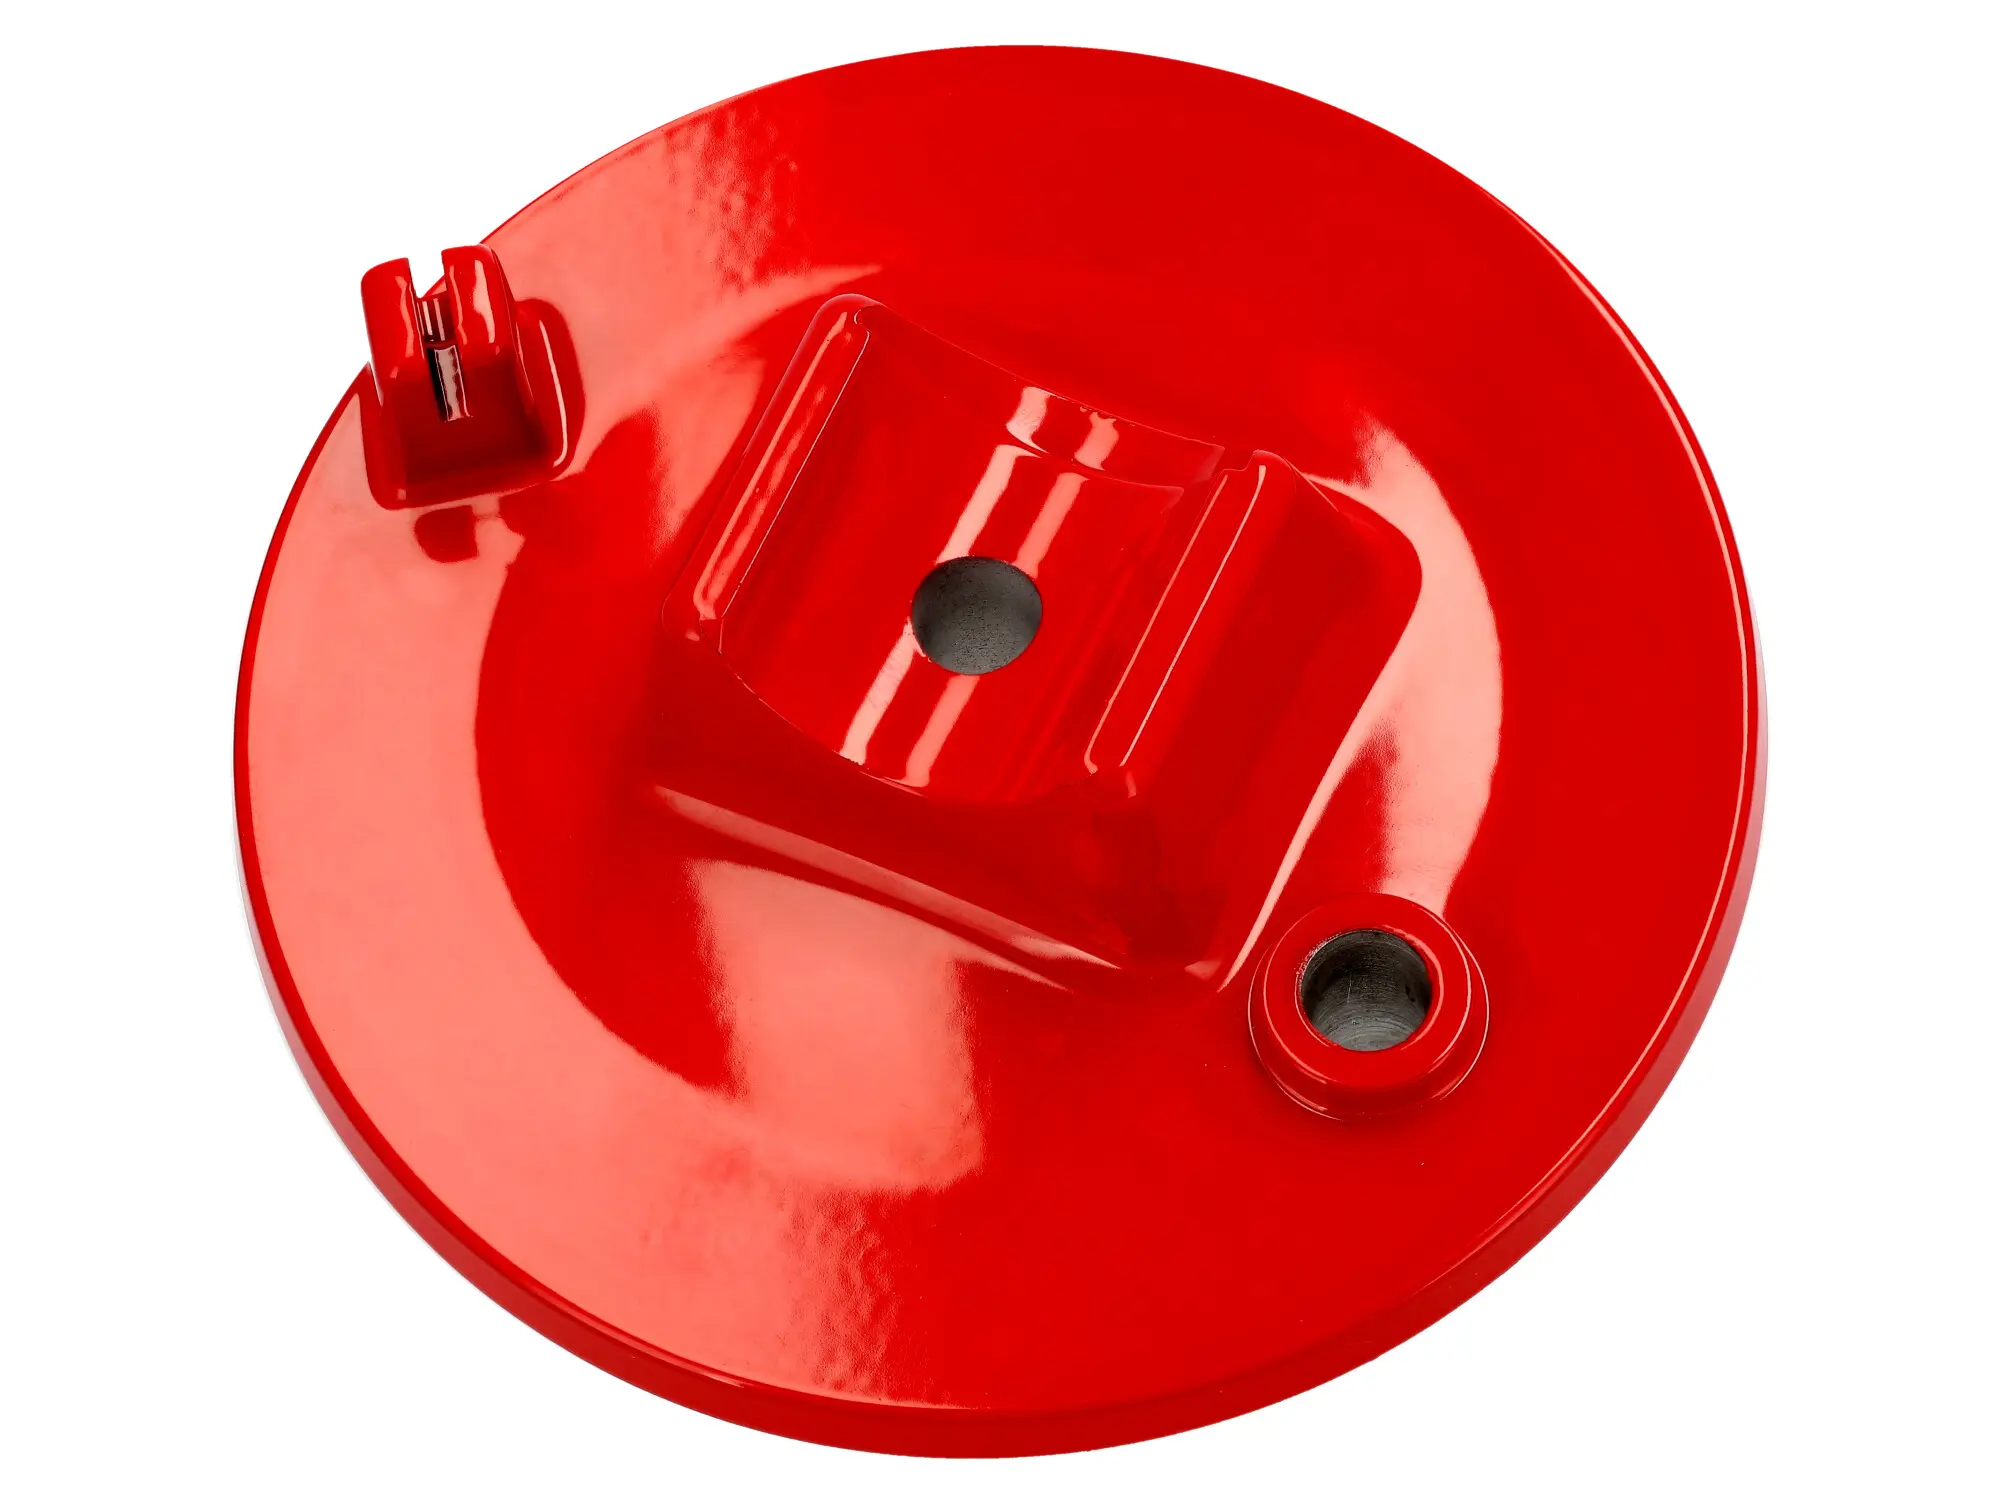 Bremsschild vorn, Rot - für Simson S50, S51, S70, S53, S83, SR50, SR80, Art.-Nr.: 10073619 - Bild 1